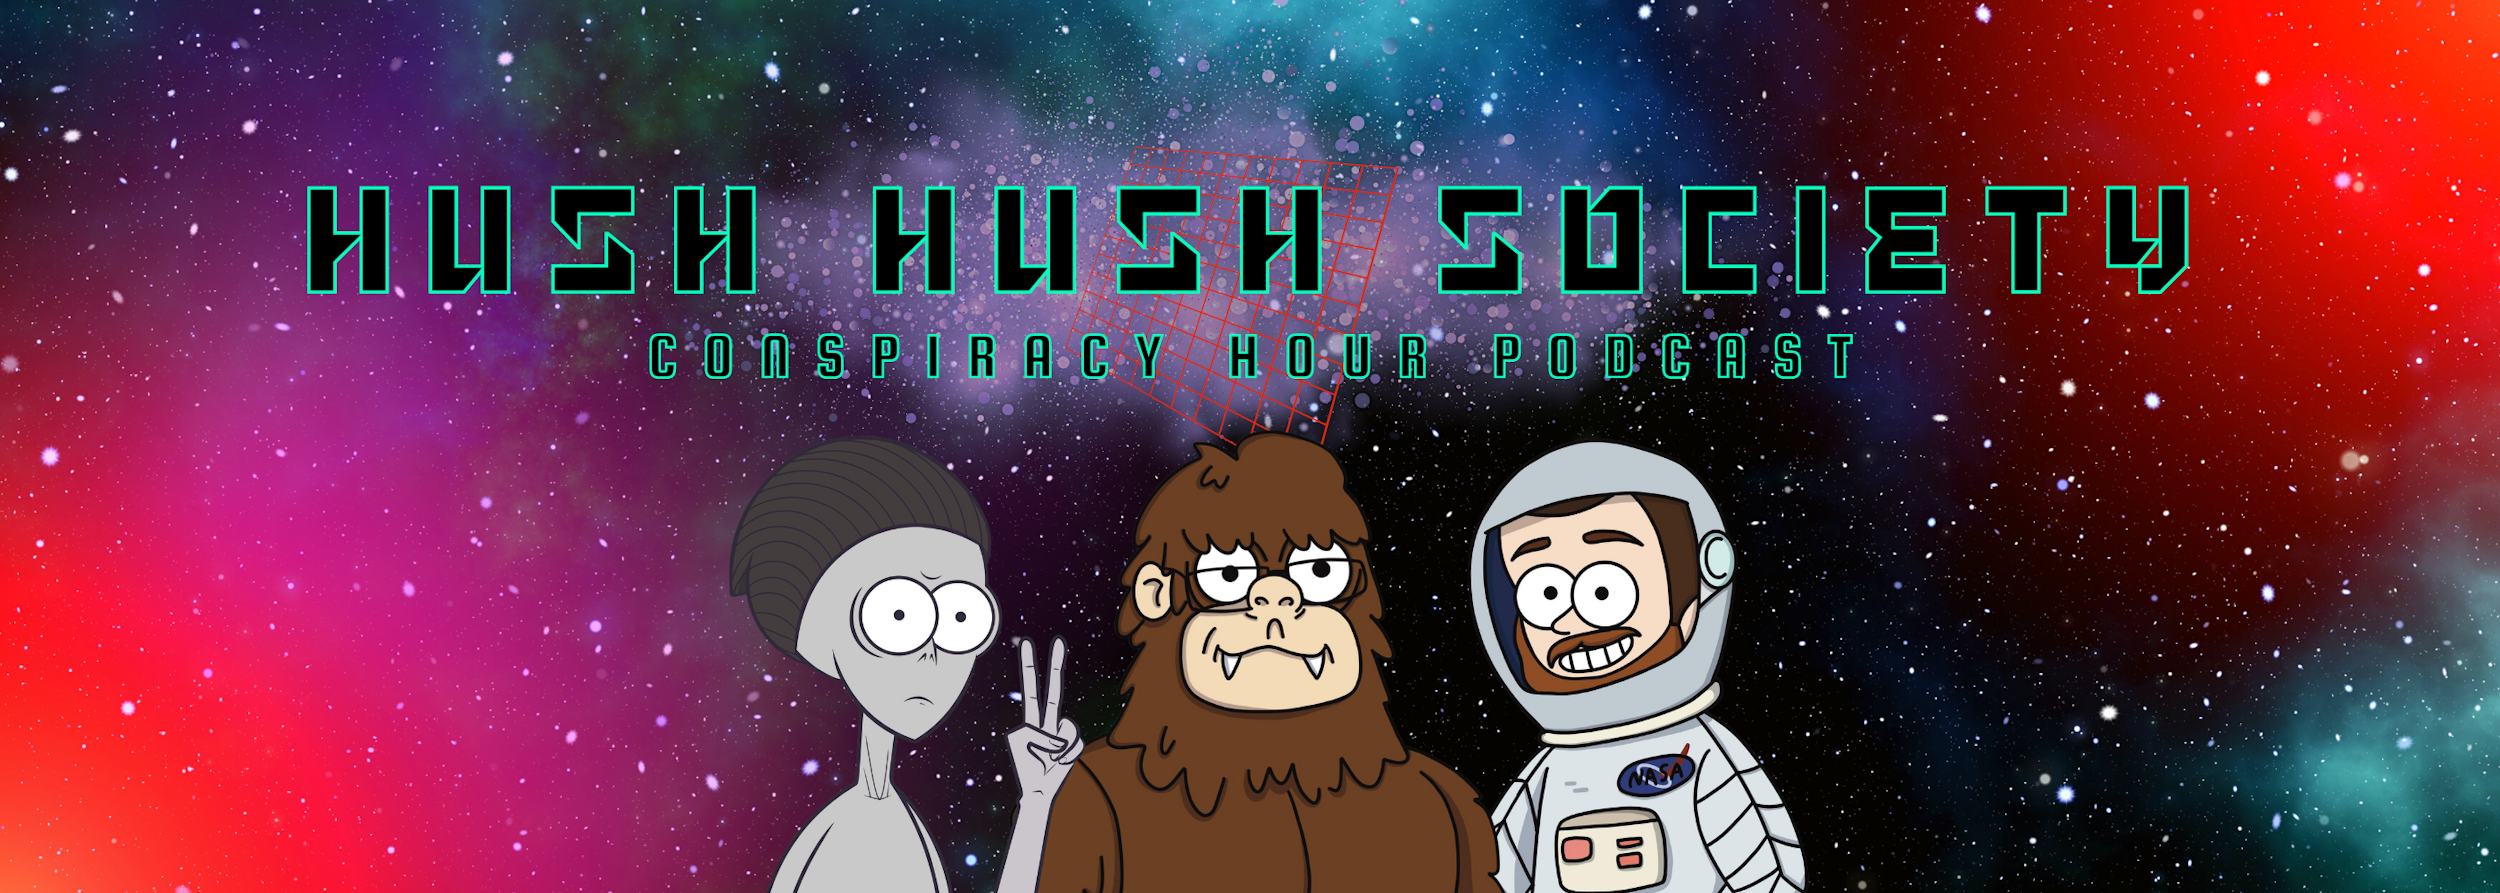 hushhushsociety.com